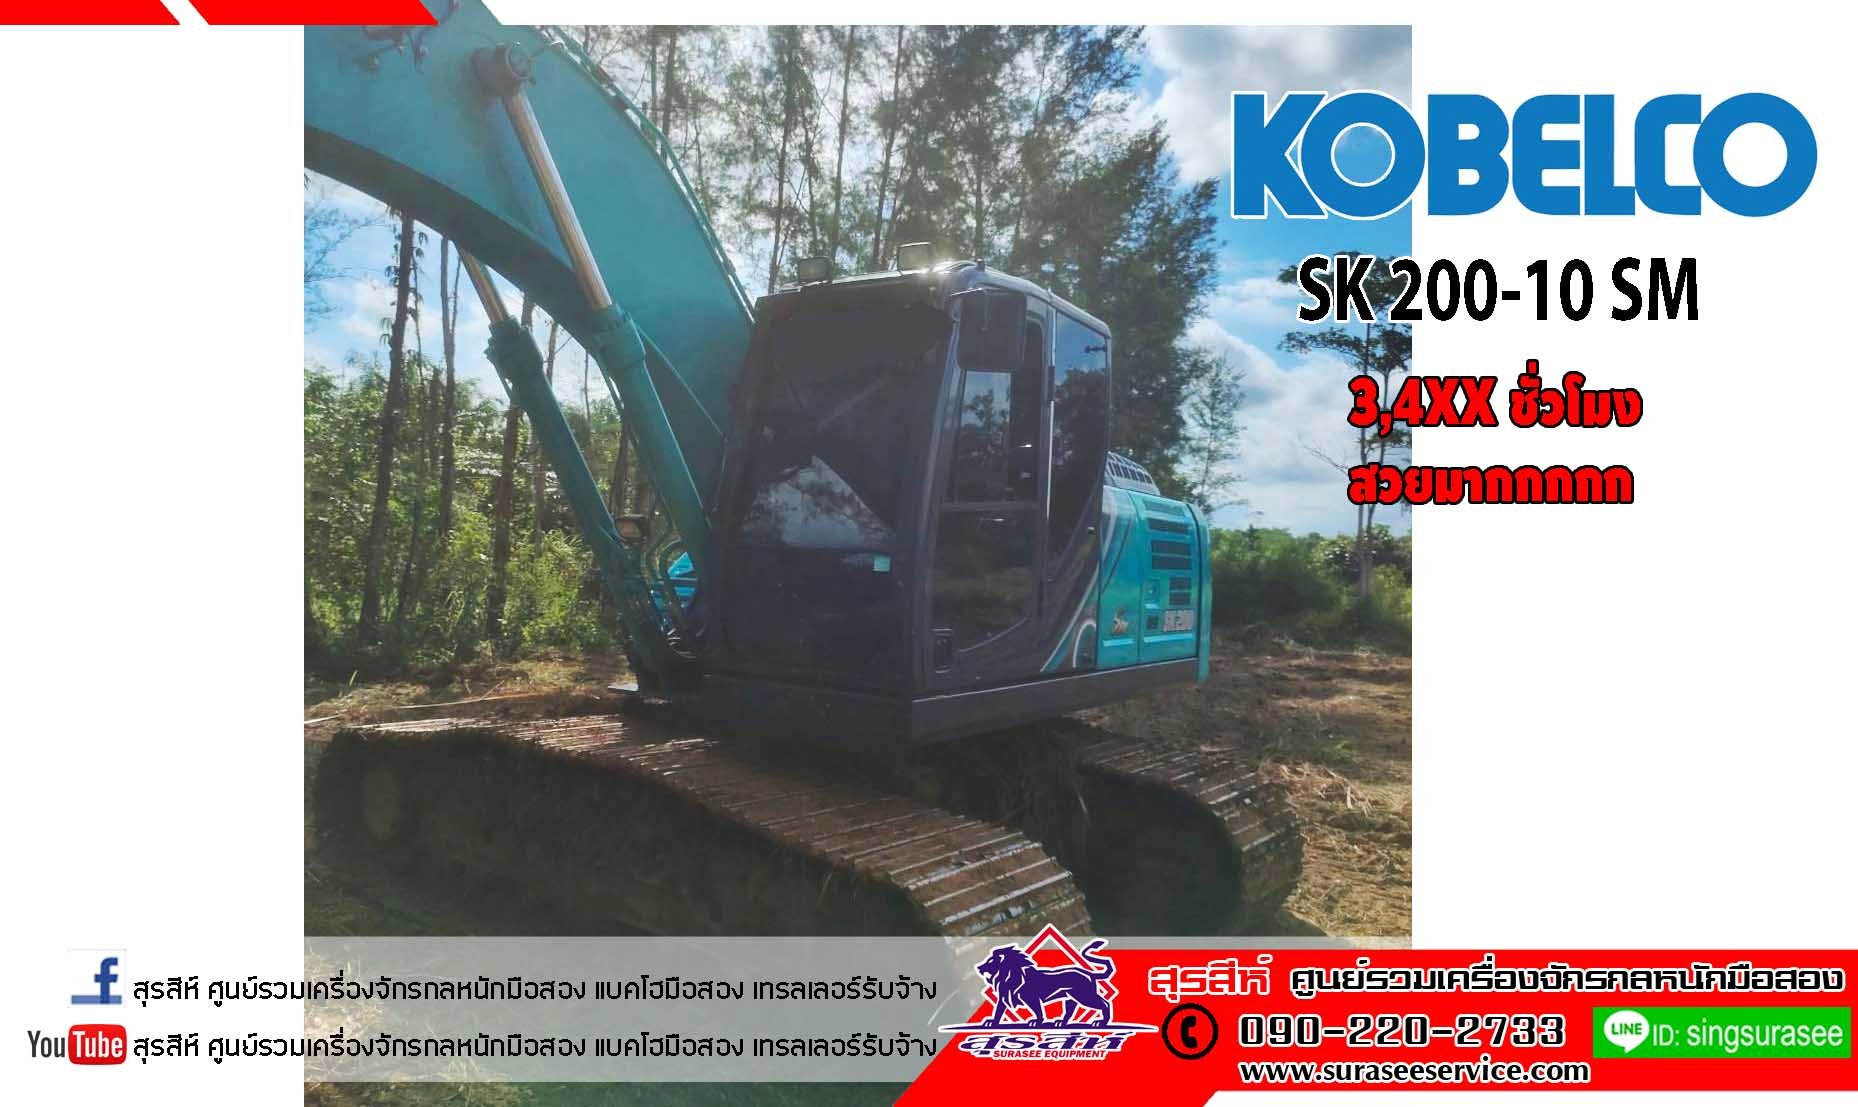 ราคาพิเศษโทร  KOBELCO SK200-10 SM ใช้งานเพียง 3,4xx ชั่วโมง